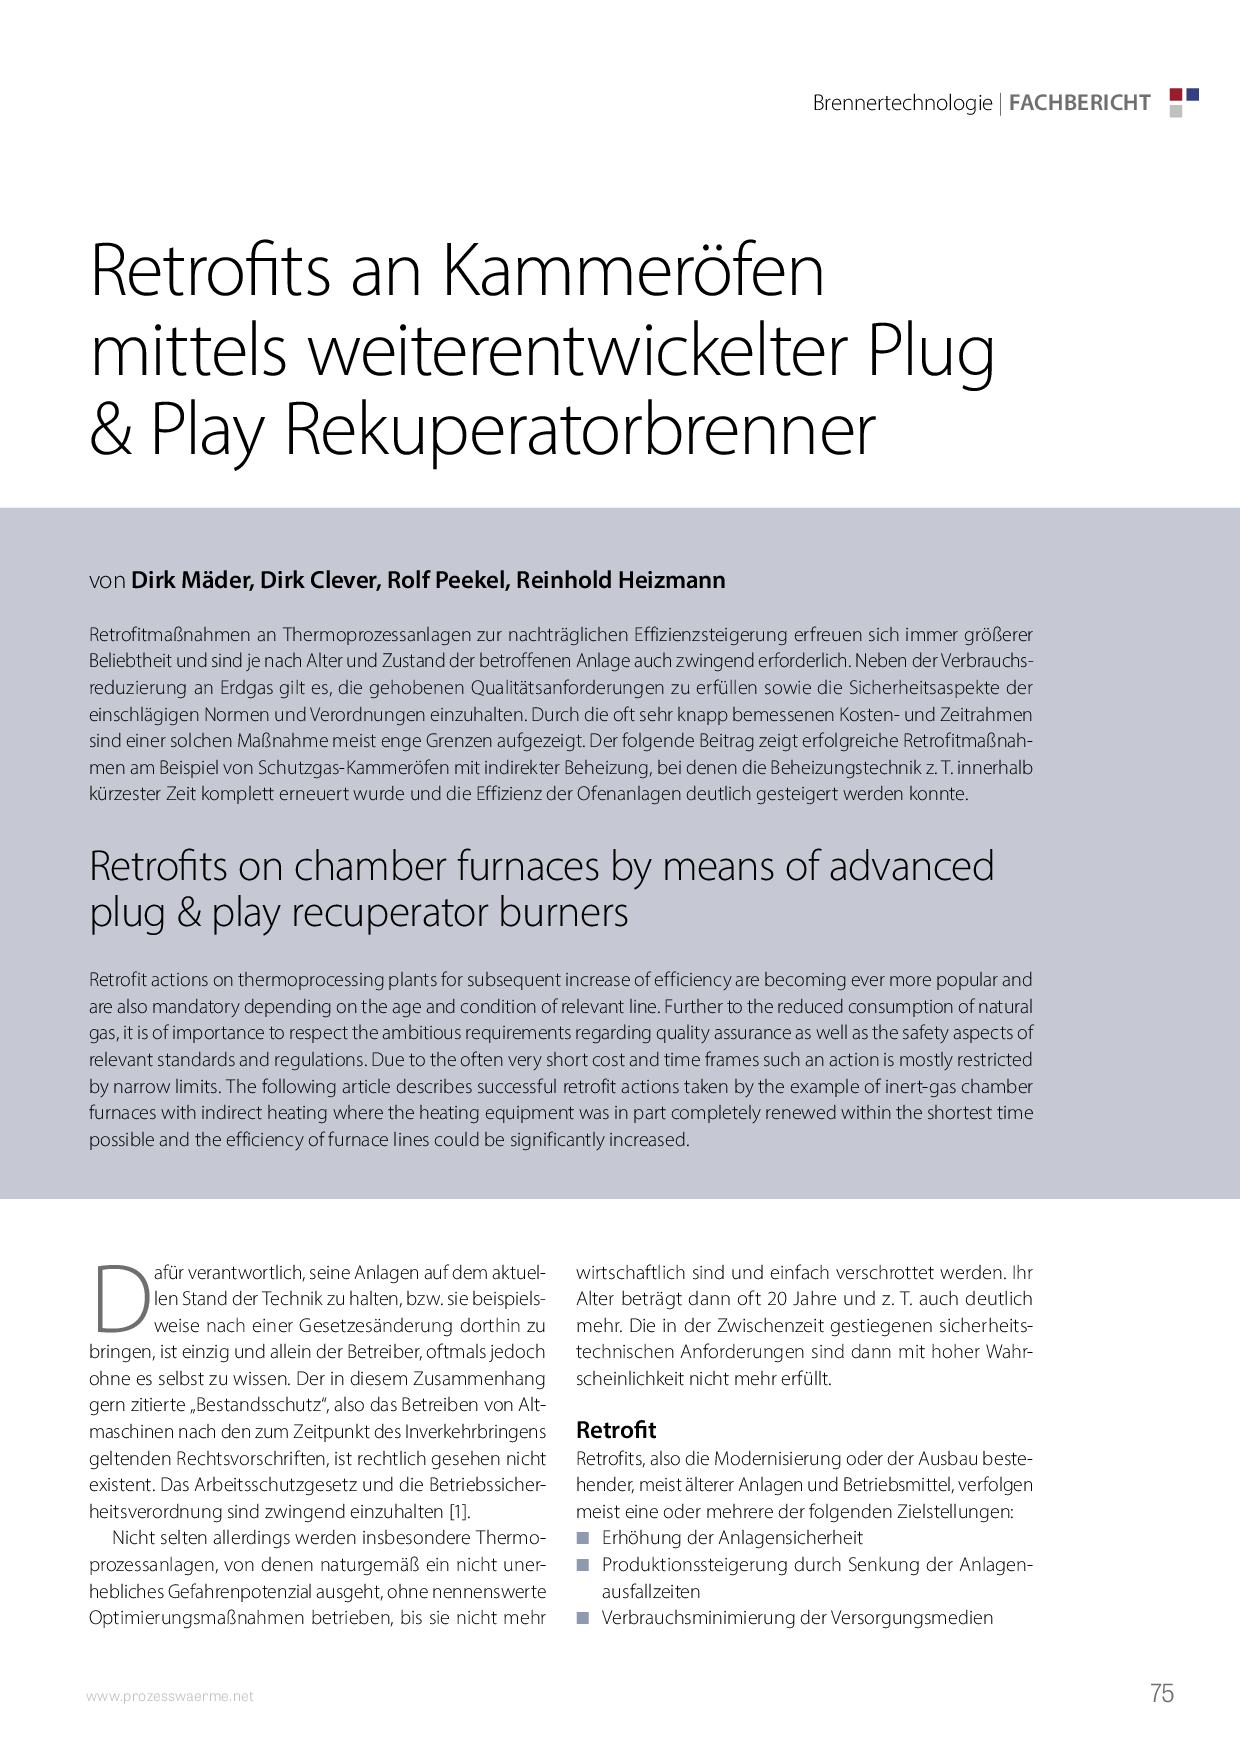 Retrofits an Kammeröfen mittels weiterentwickelter Plug & Play Rekuperatorbrenner